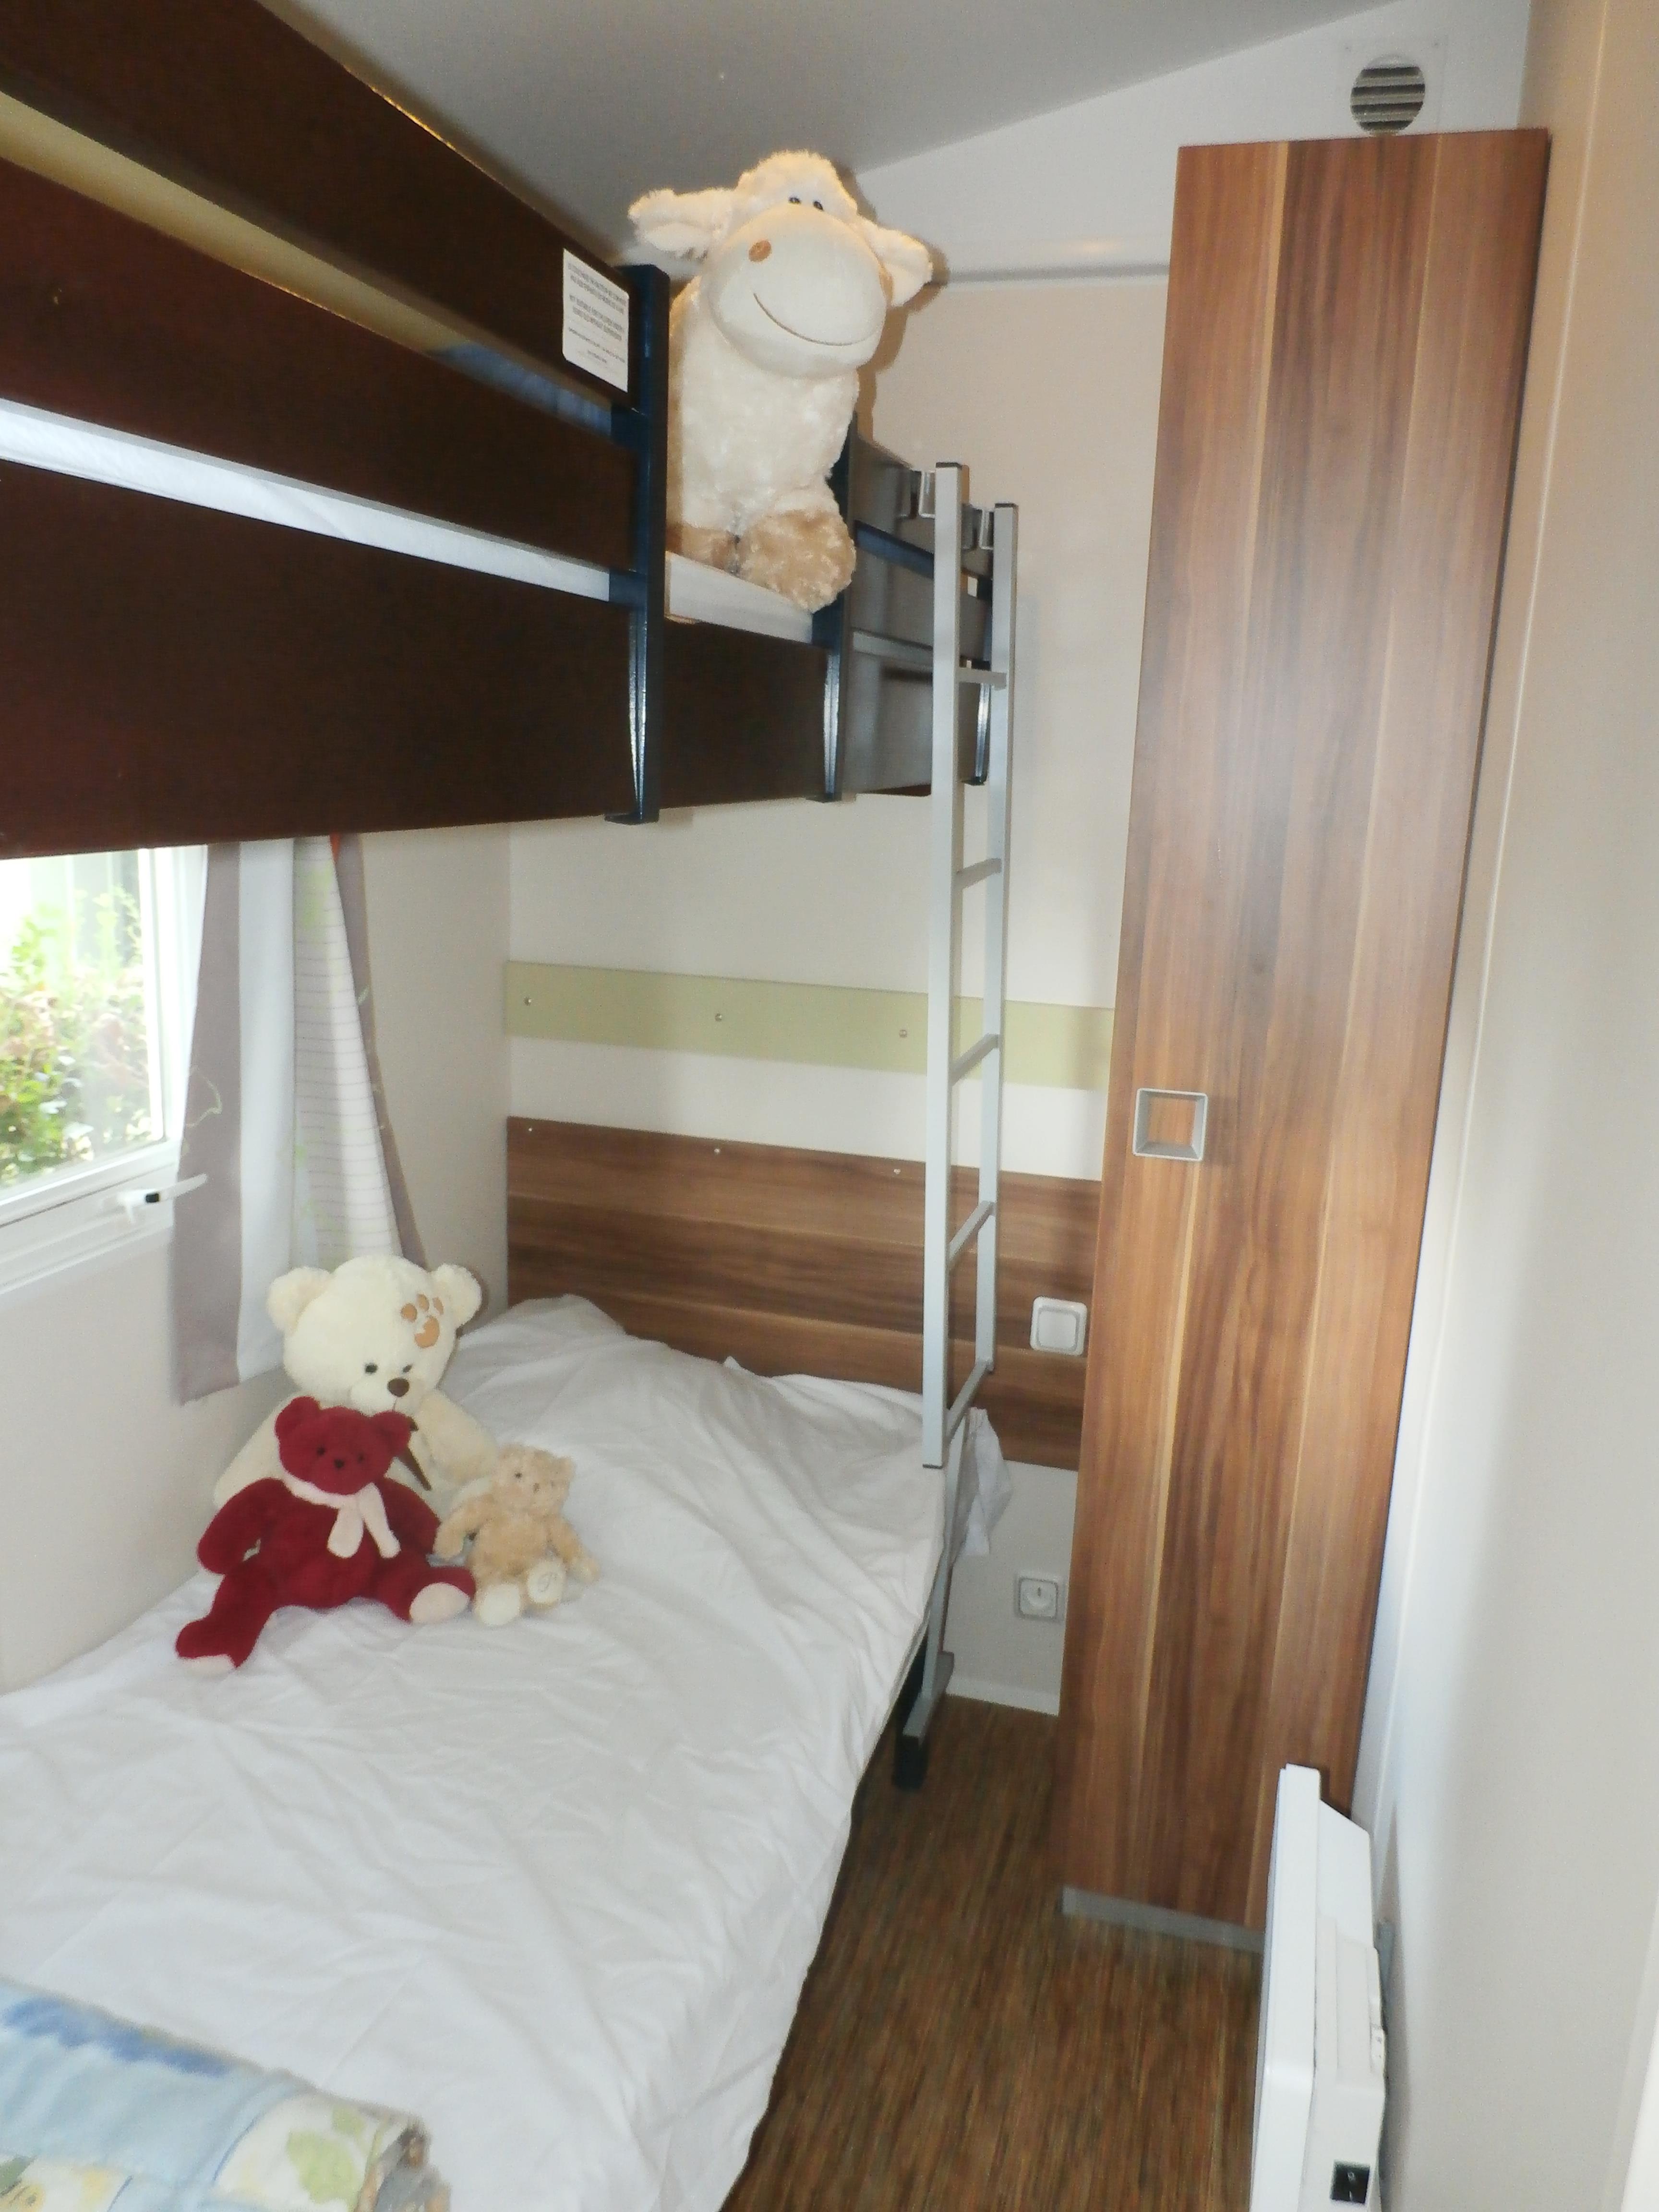 Mietunterkunft - Mobilhome - 3 Schlafzimmer: 1 Doppelzimmer, 2 Schlafzimmer Mit Etagenbetten. - Camping Le Colombier